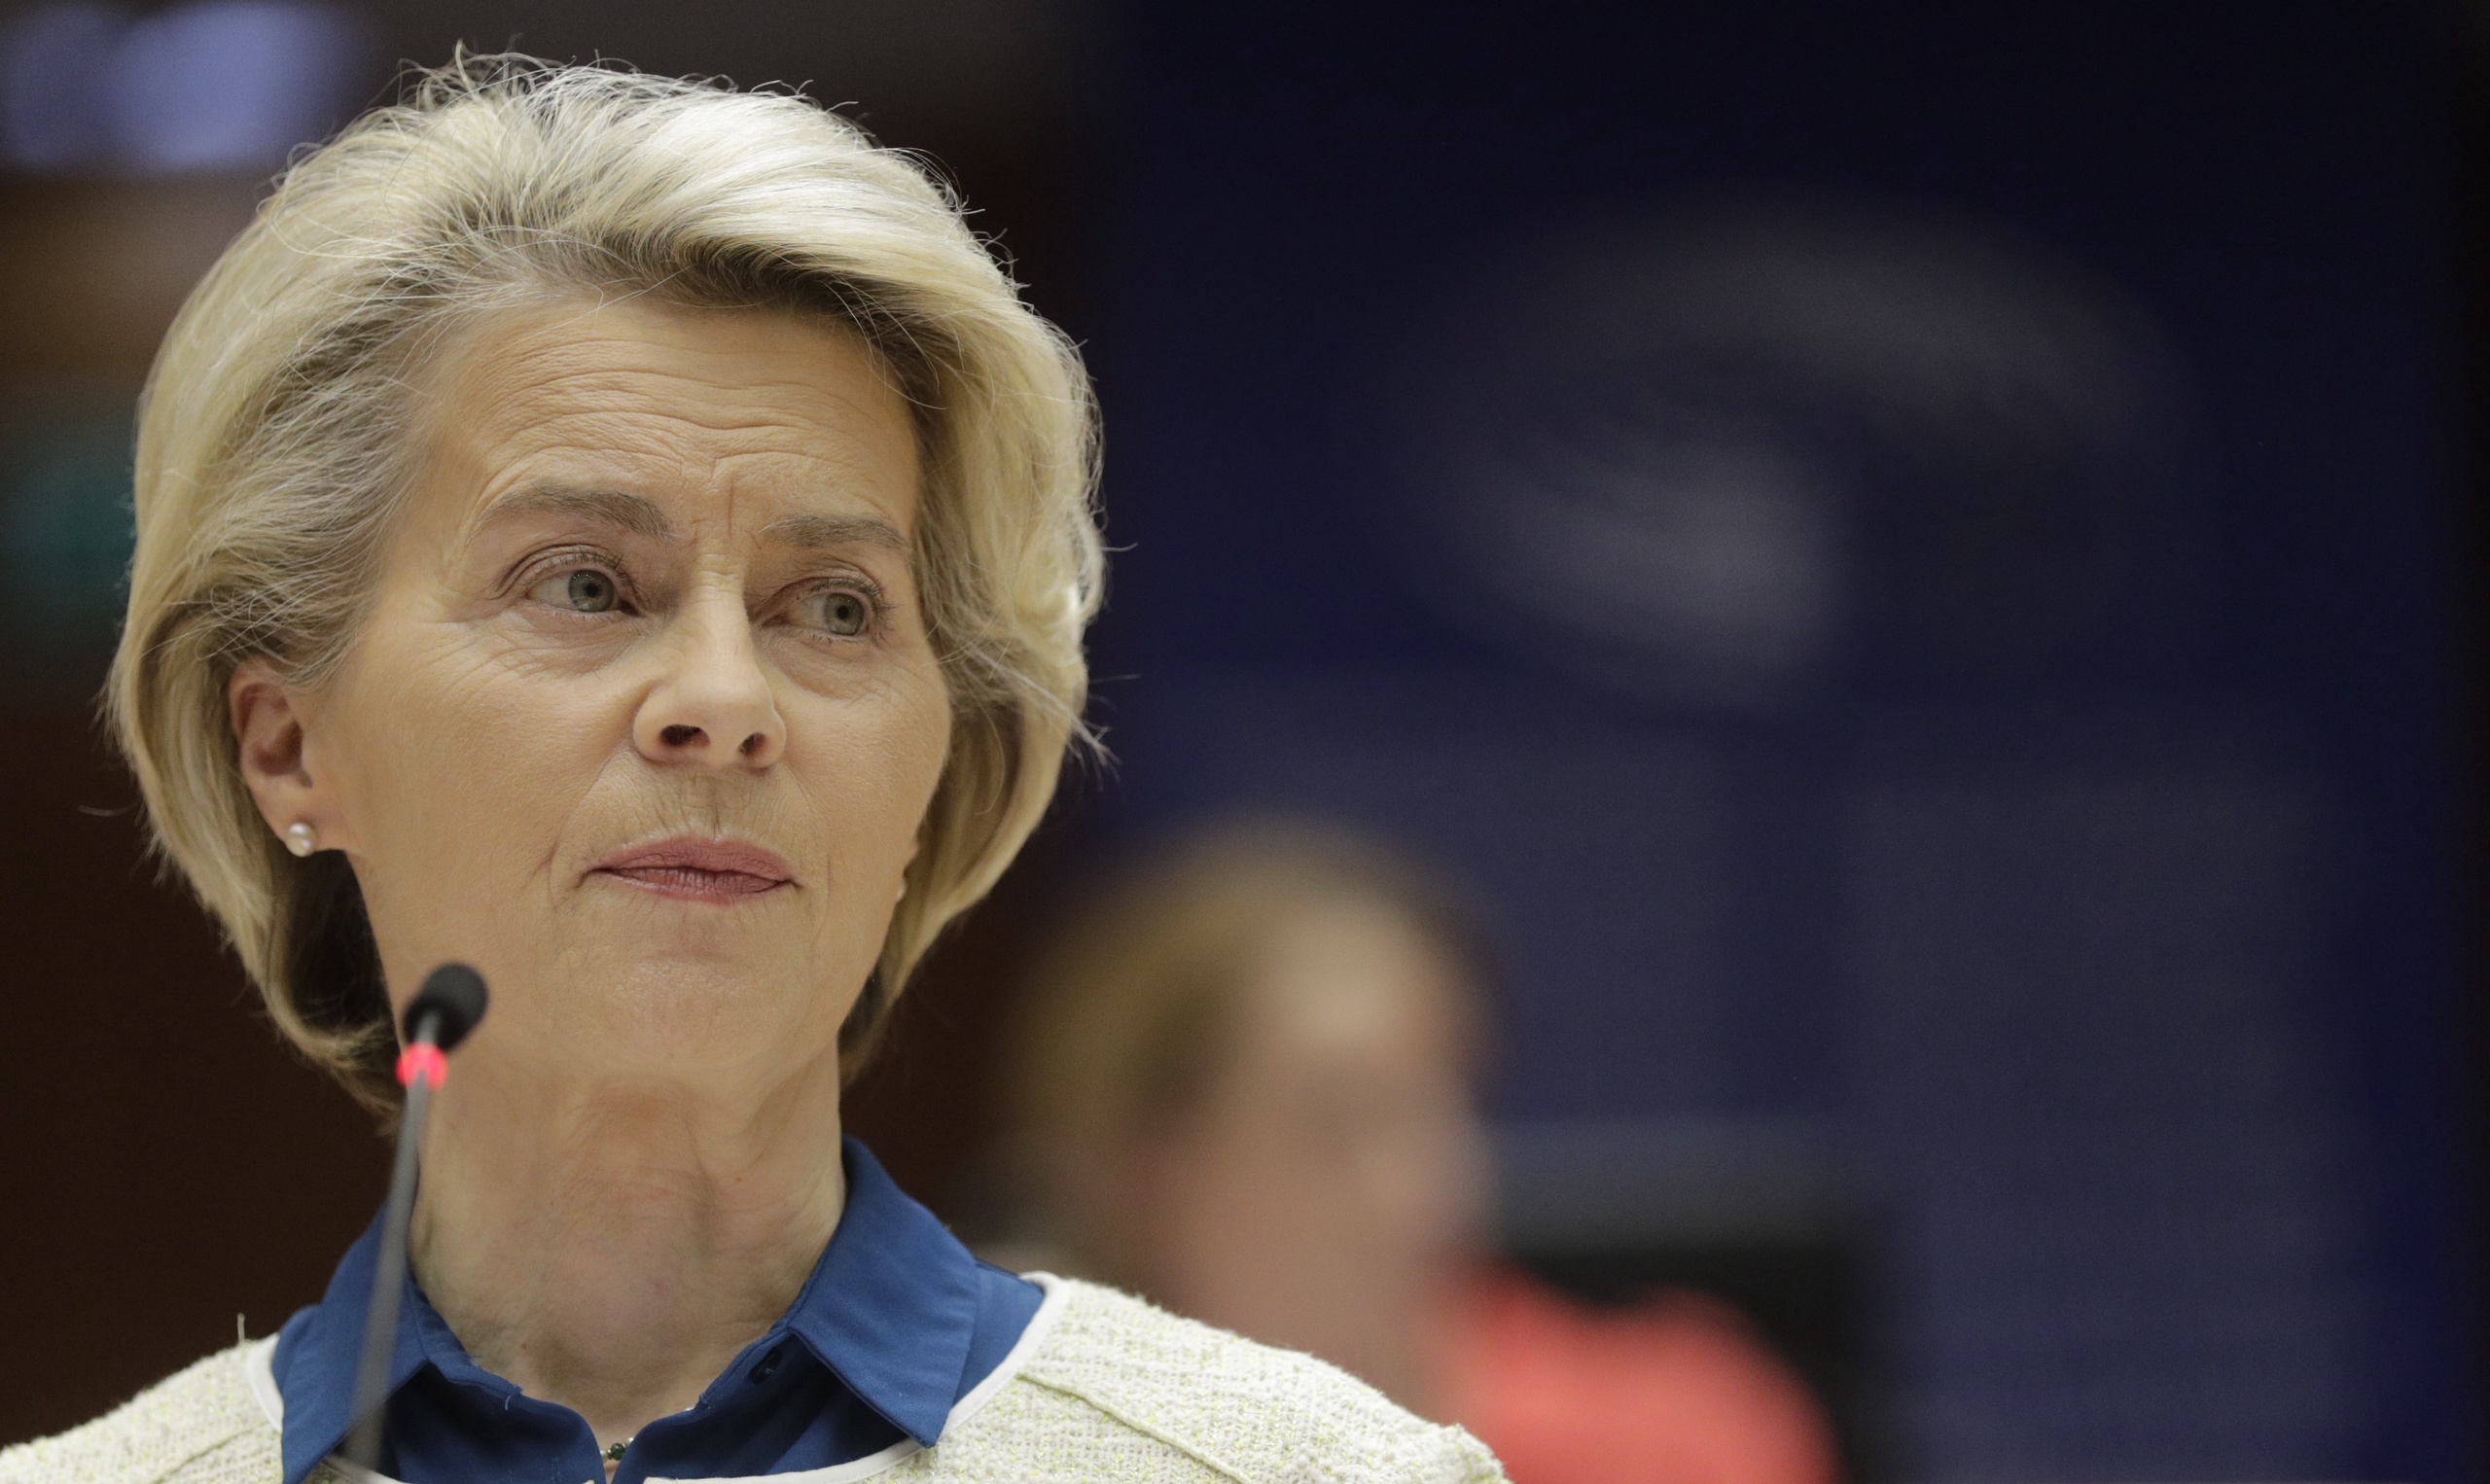 De voorzitter van de Europese Comissie Ursula von der Leyen reist vandaag met andere kopstukken af naar Oekraïne voor de top in Kiev. Door een 'zware' delegatie naar Kiev af te laten reizen wordt er een belangrijk signaal afgegeven aan Oekraïne en de rest van de wereld.